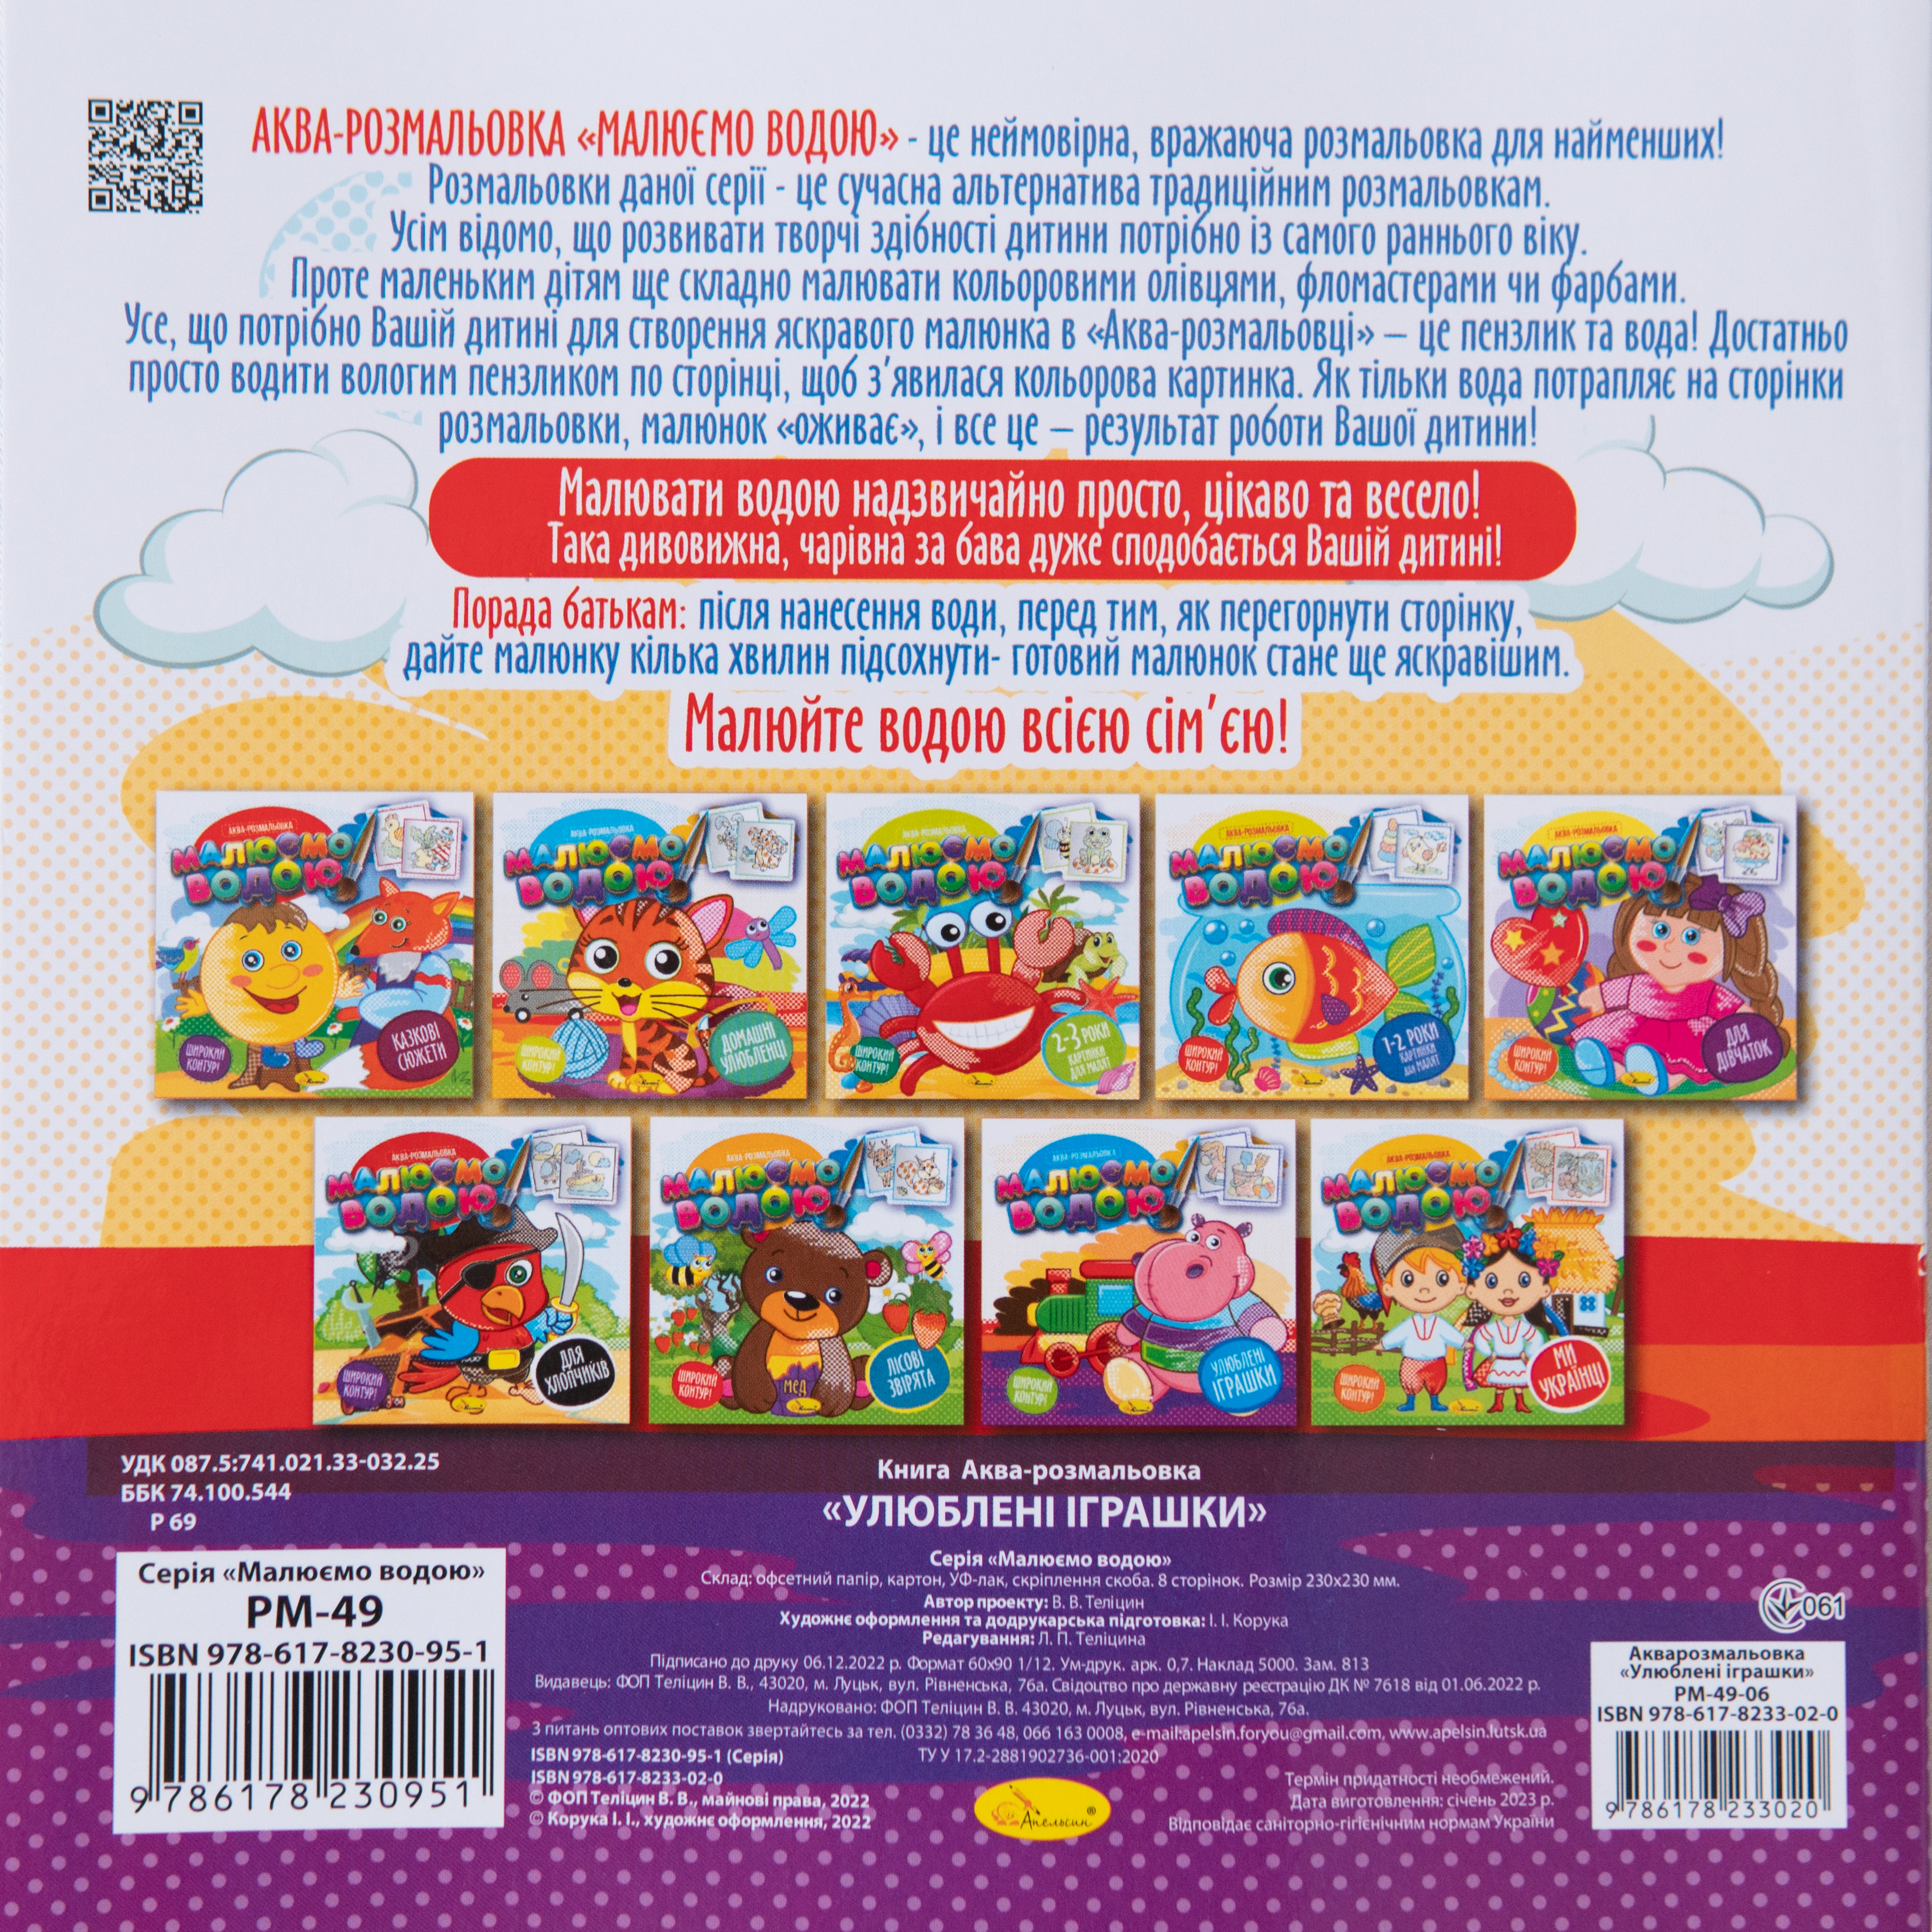 Aquarell-Malbuch Lieblingsspielzeug - Vorbereitung auf die Schulein ukrainischer Sprache/Aquarell-Malbuch Lieblingsspielzeug - Vorbereitung auf die Schulein ukrainischer Sprache